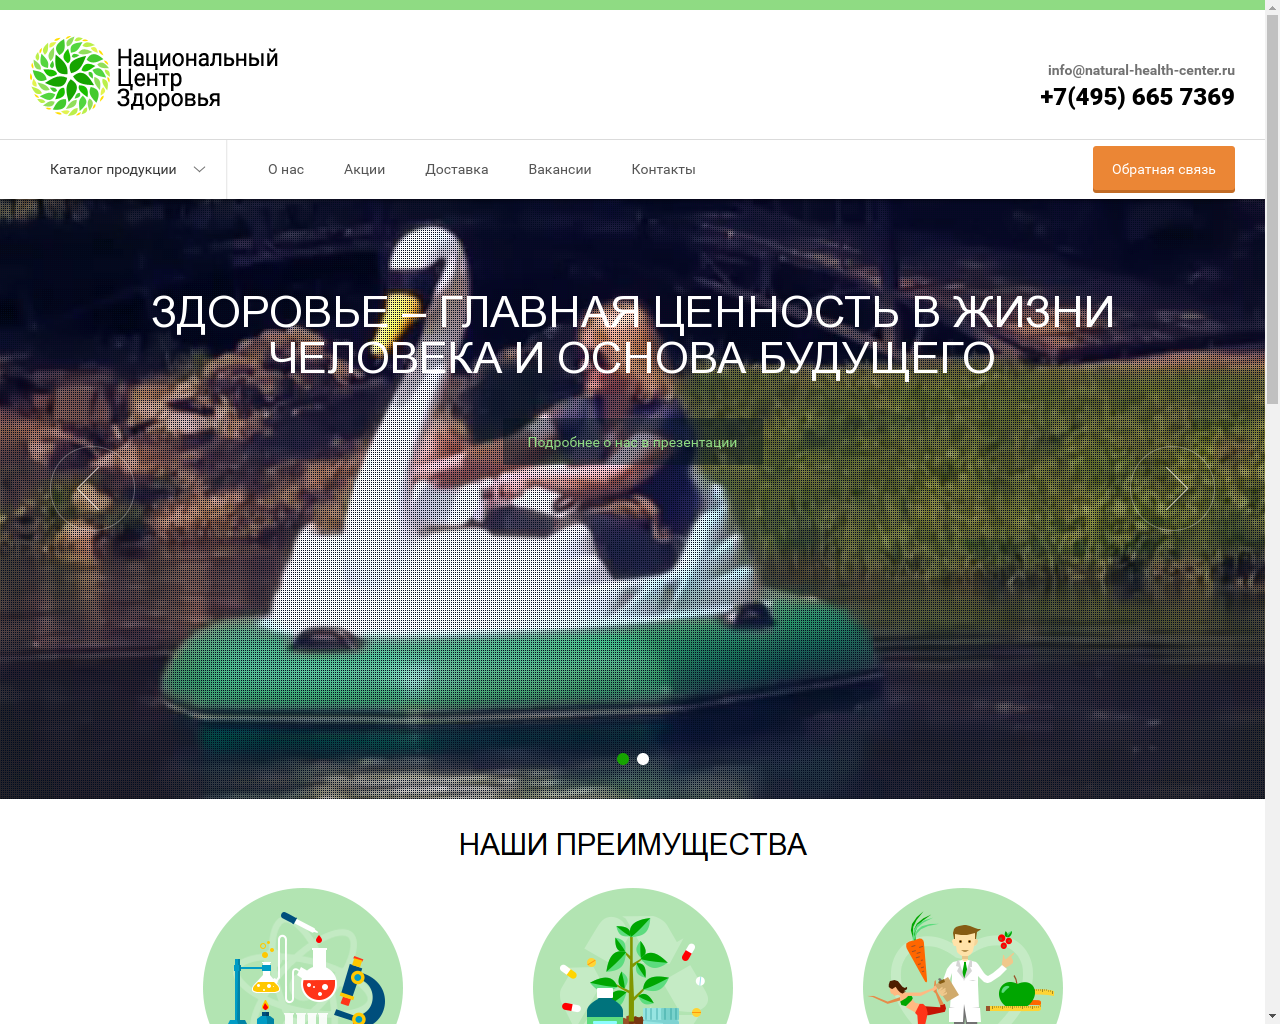 Изображение сайта natural-health-center.ru в разрешении 1280x1024